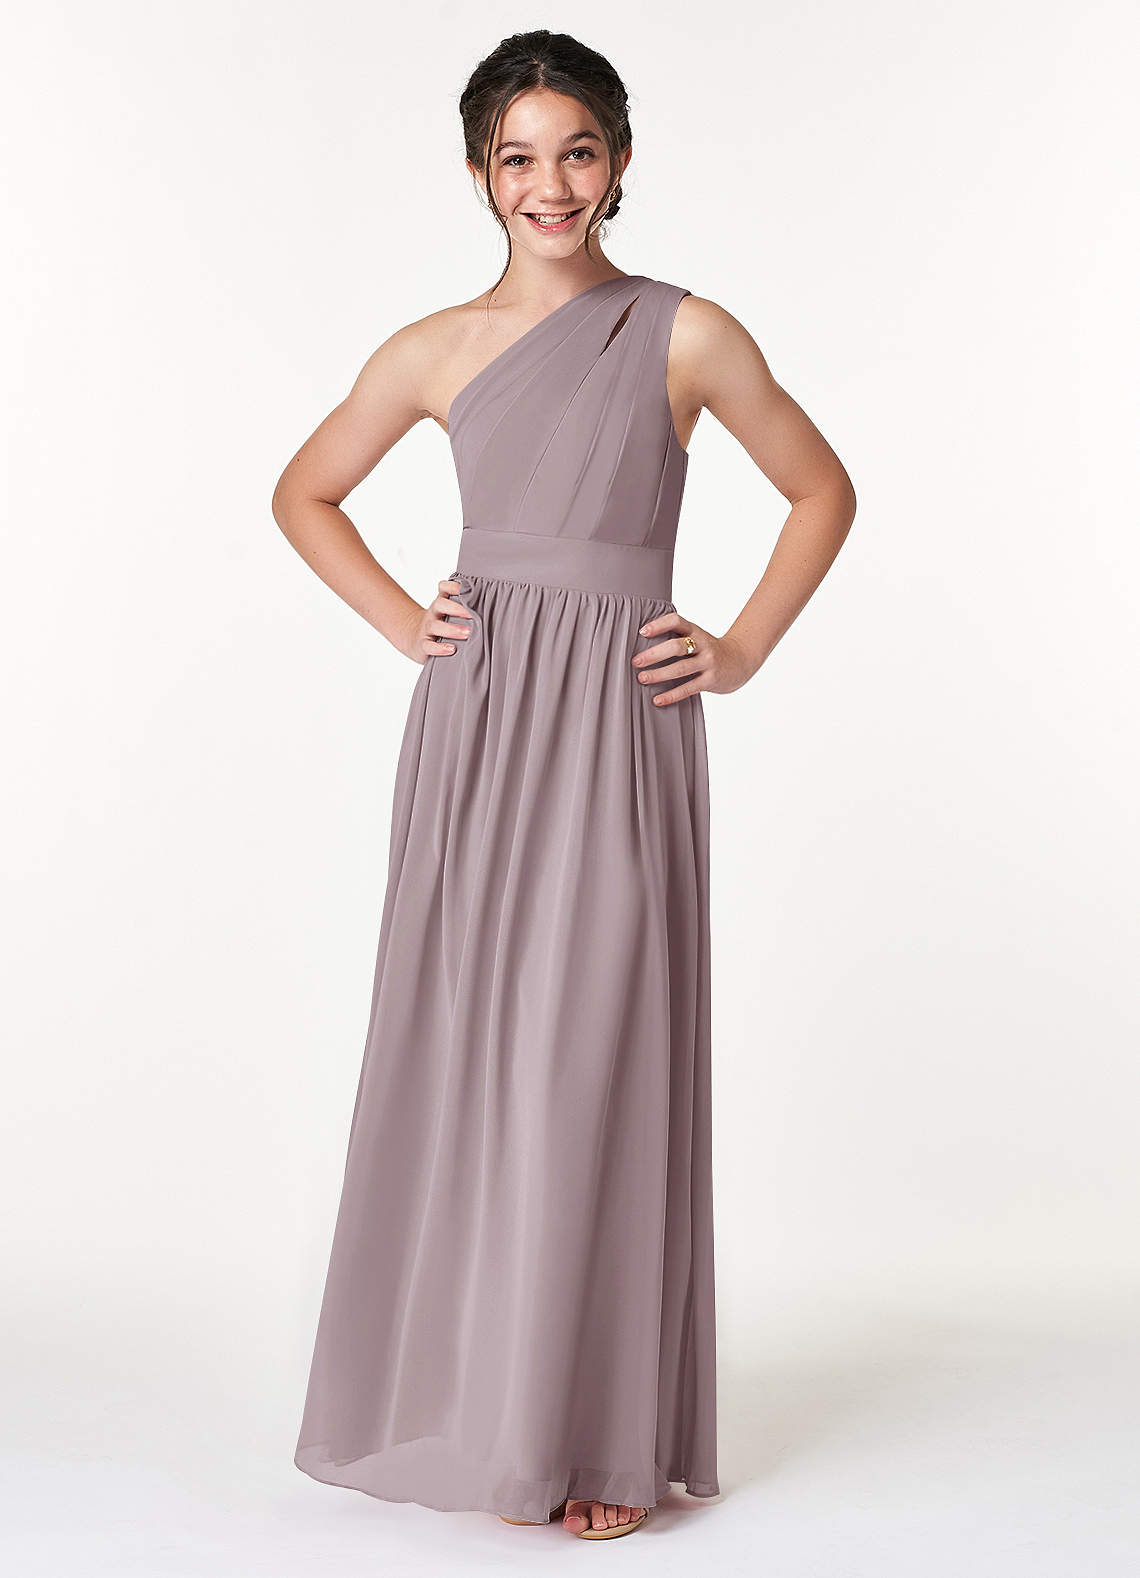 Azazie Molly A-Line Pleated Chiffon Floor-Length Junior Bridesmaid Dress image1